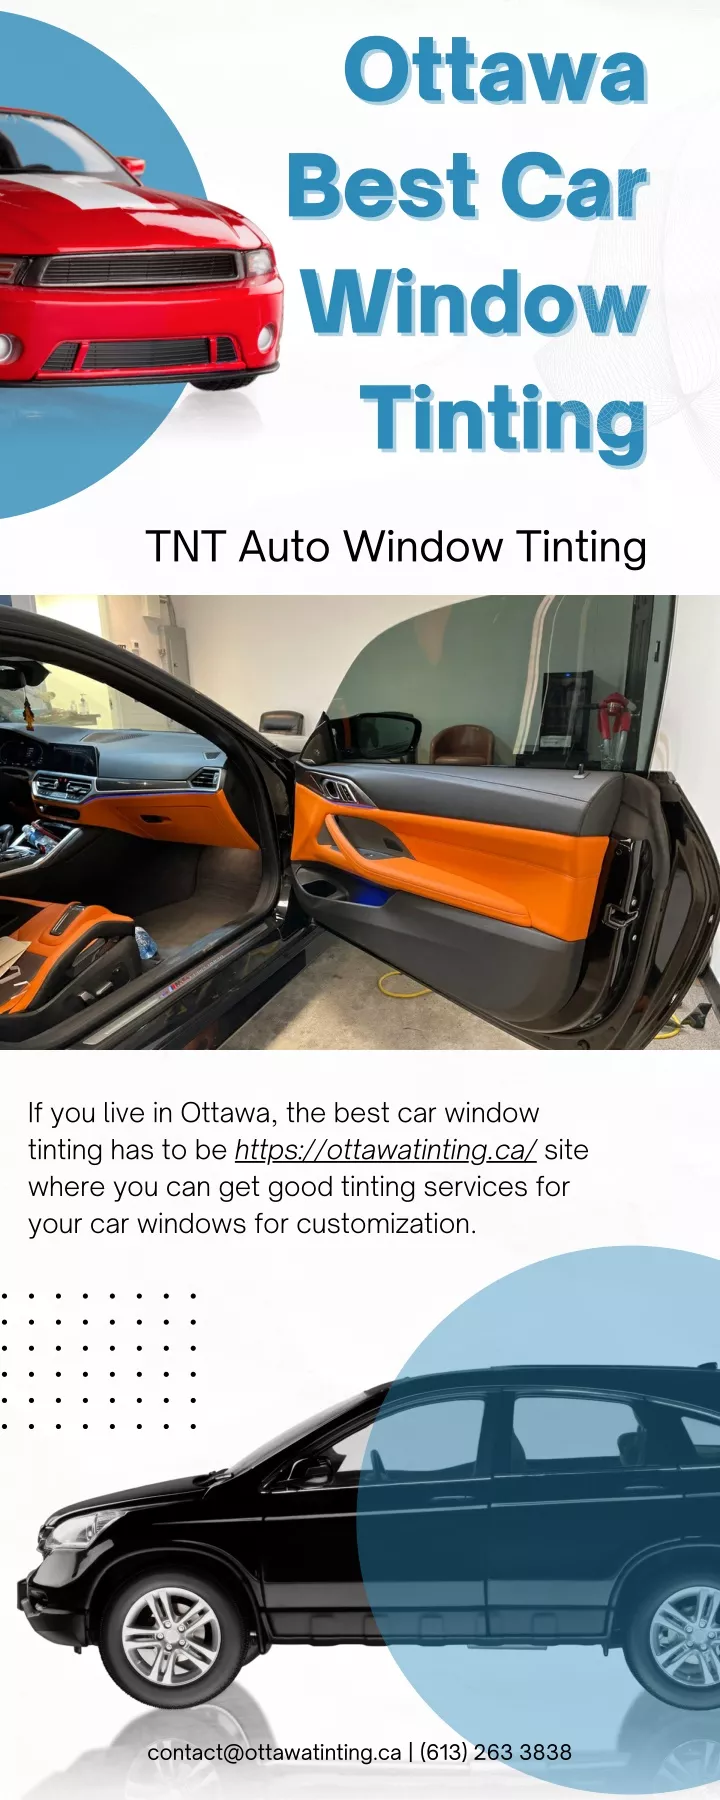 ottawa ottawa best car best car window window